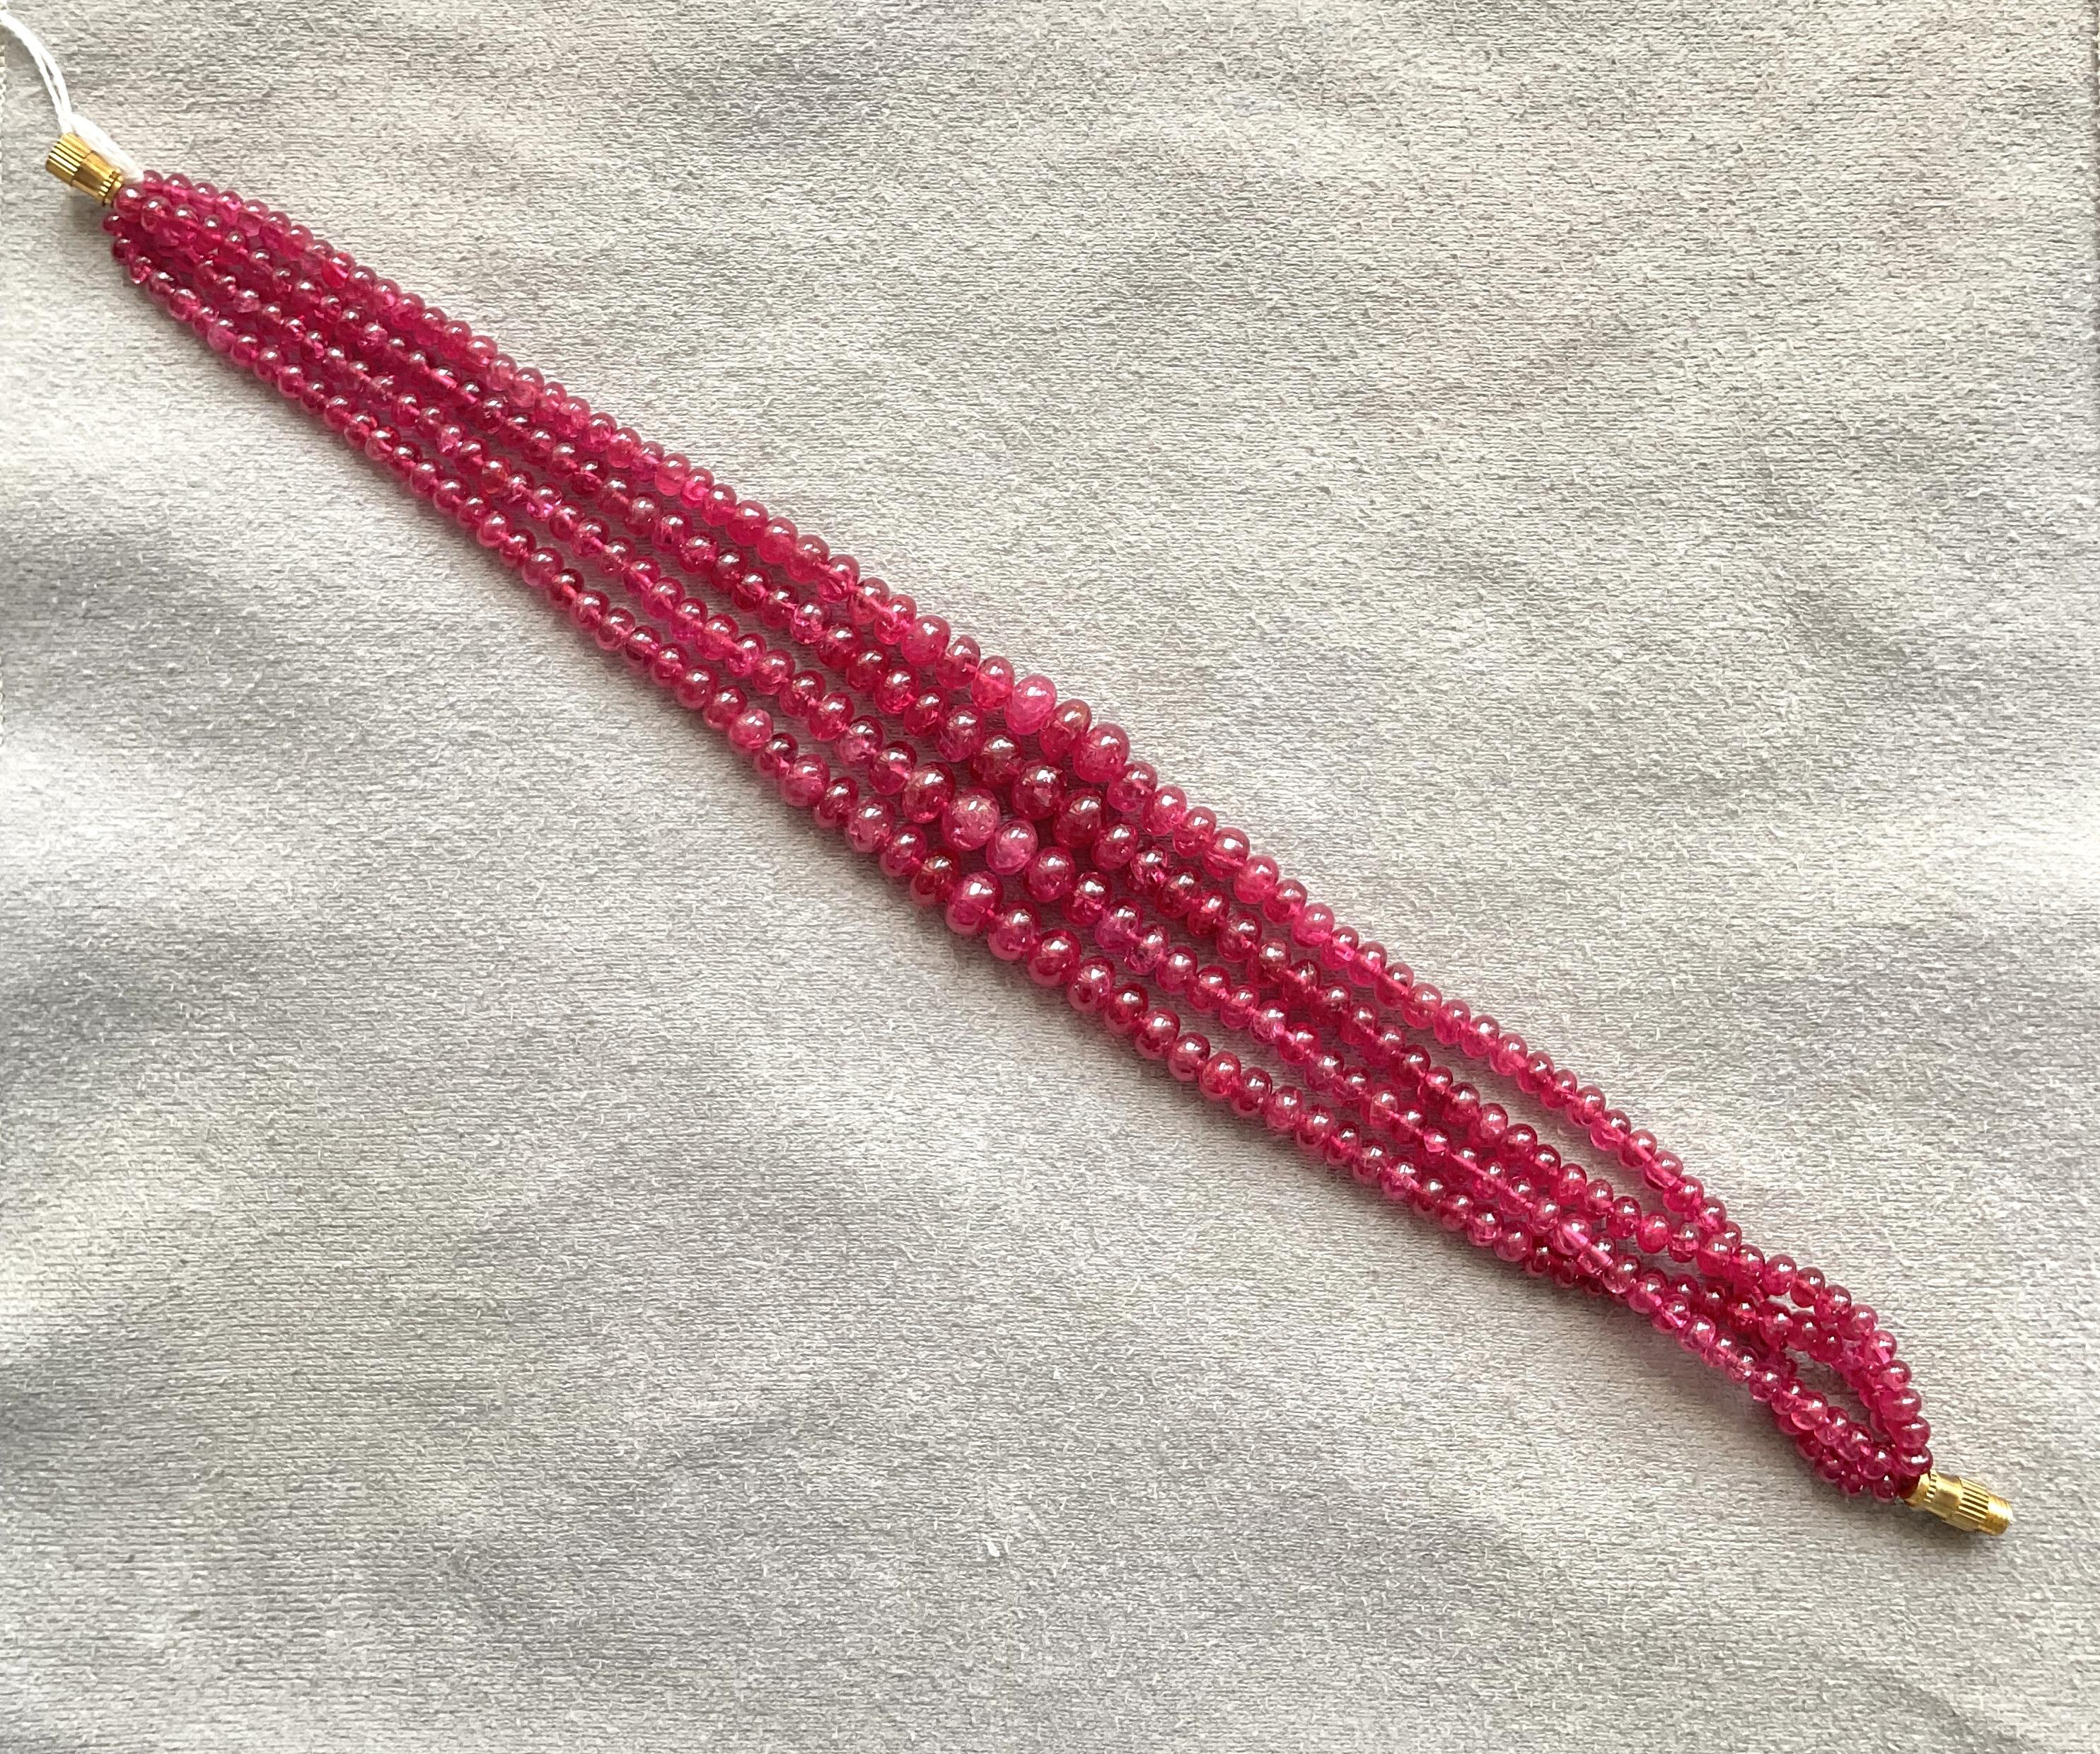 165,75 Karat Burma Red Spinel Perlen Top Qualität Perlenkette natürlichen Edelstein

Edelstein - Spinell
Gewicht - 165,75 Karat
Form - Perlen
Größe - 3,5 bis 6,5 MM
Anzahl - 4 Zeilen